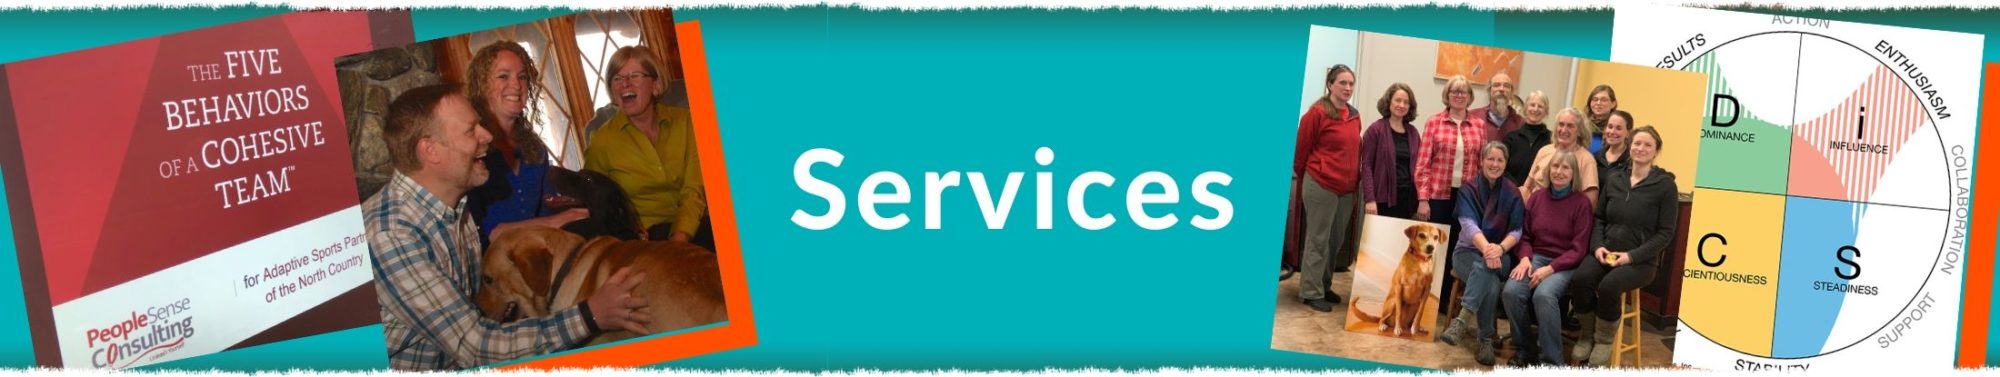 Services header